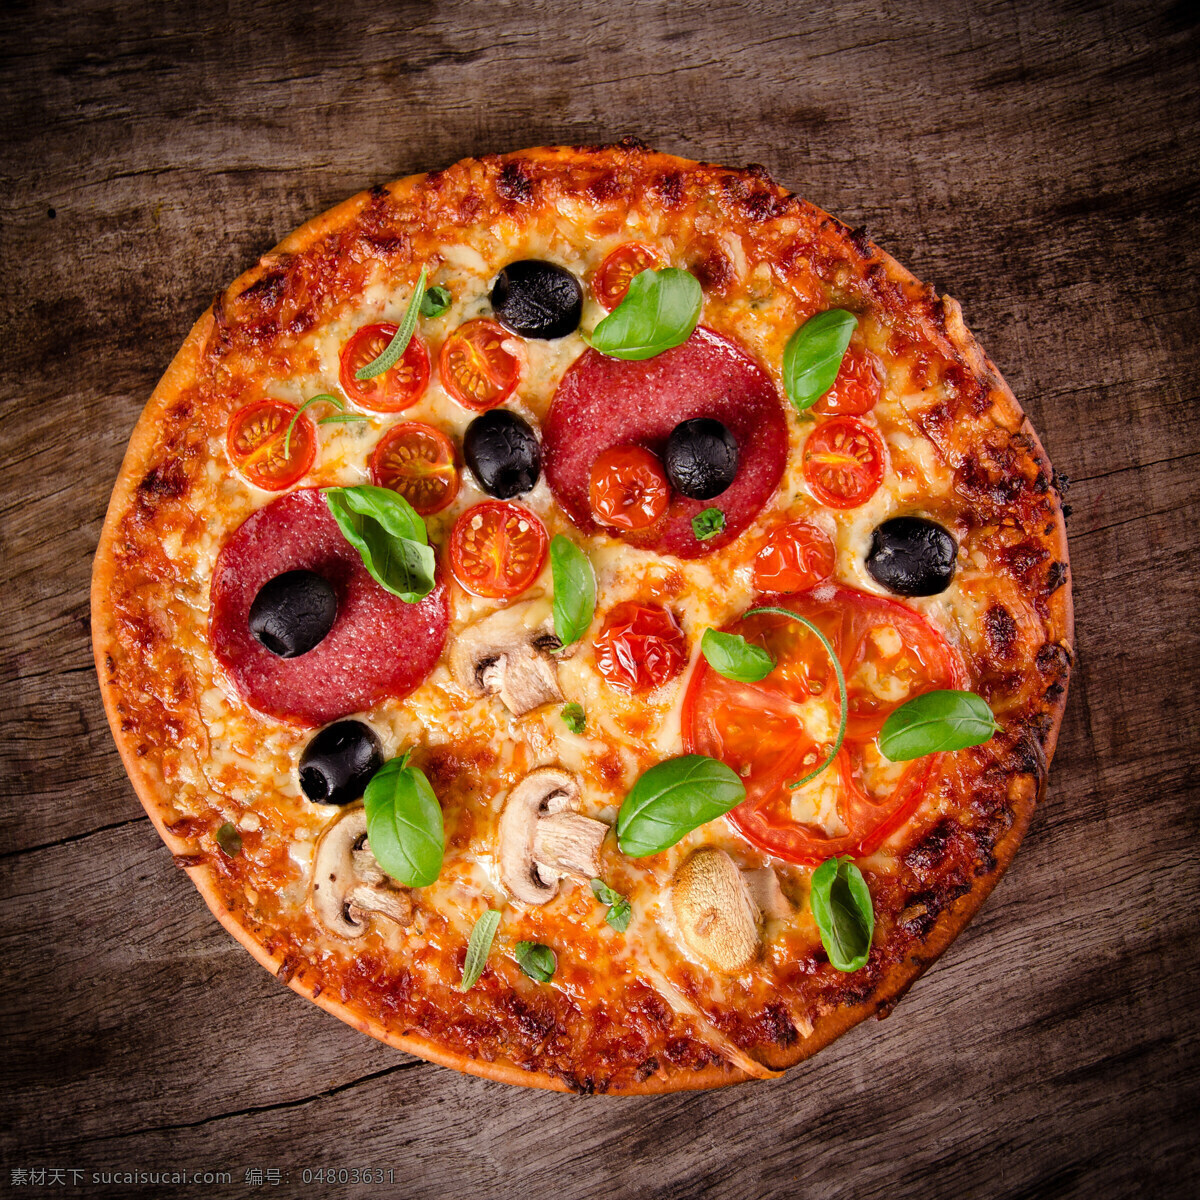 披萨 pizza 意大利披萨 比萨 美食 食物 快餐 西餐 餐饮美食 西餐美食